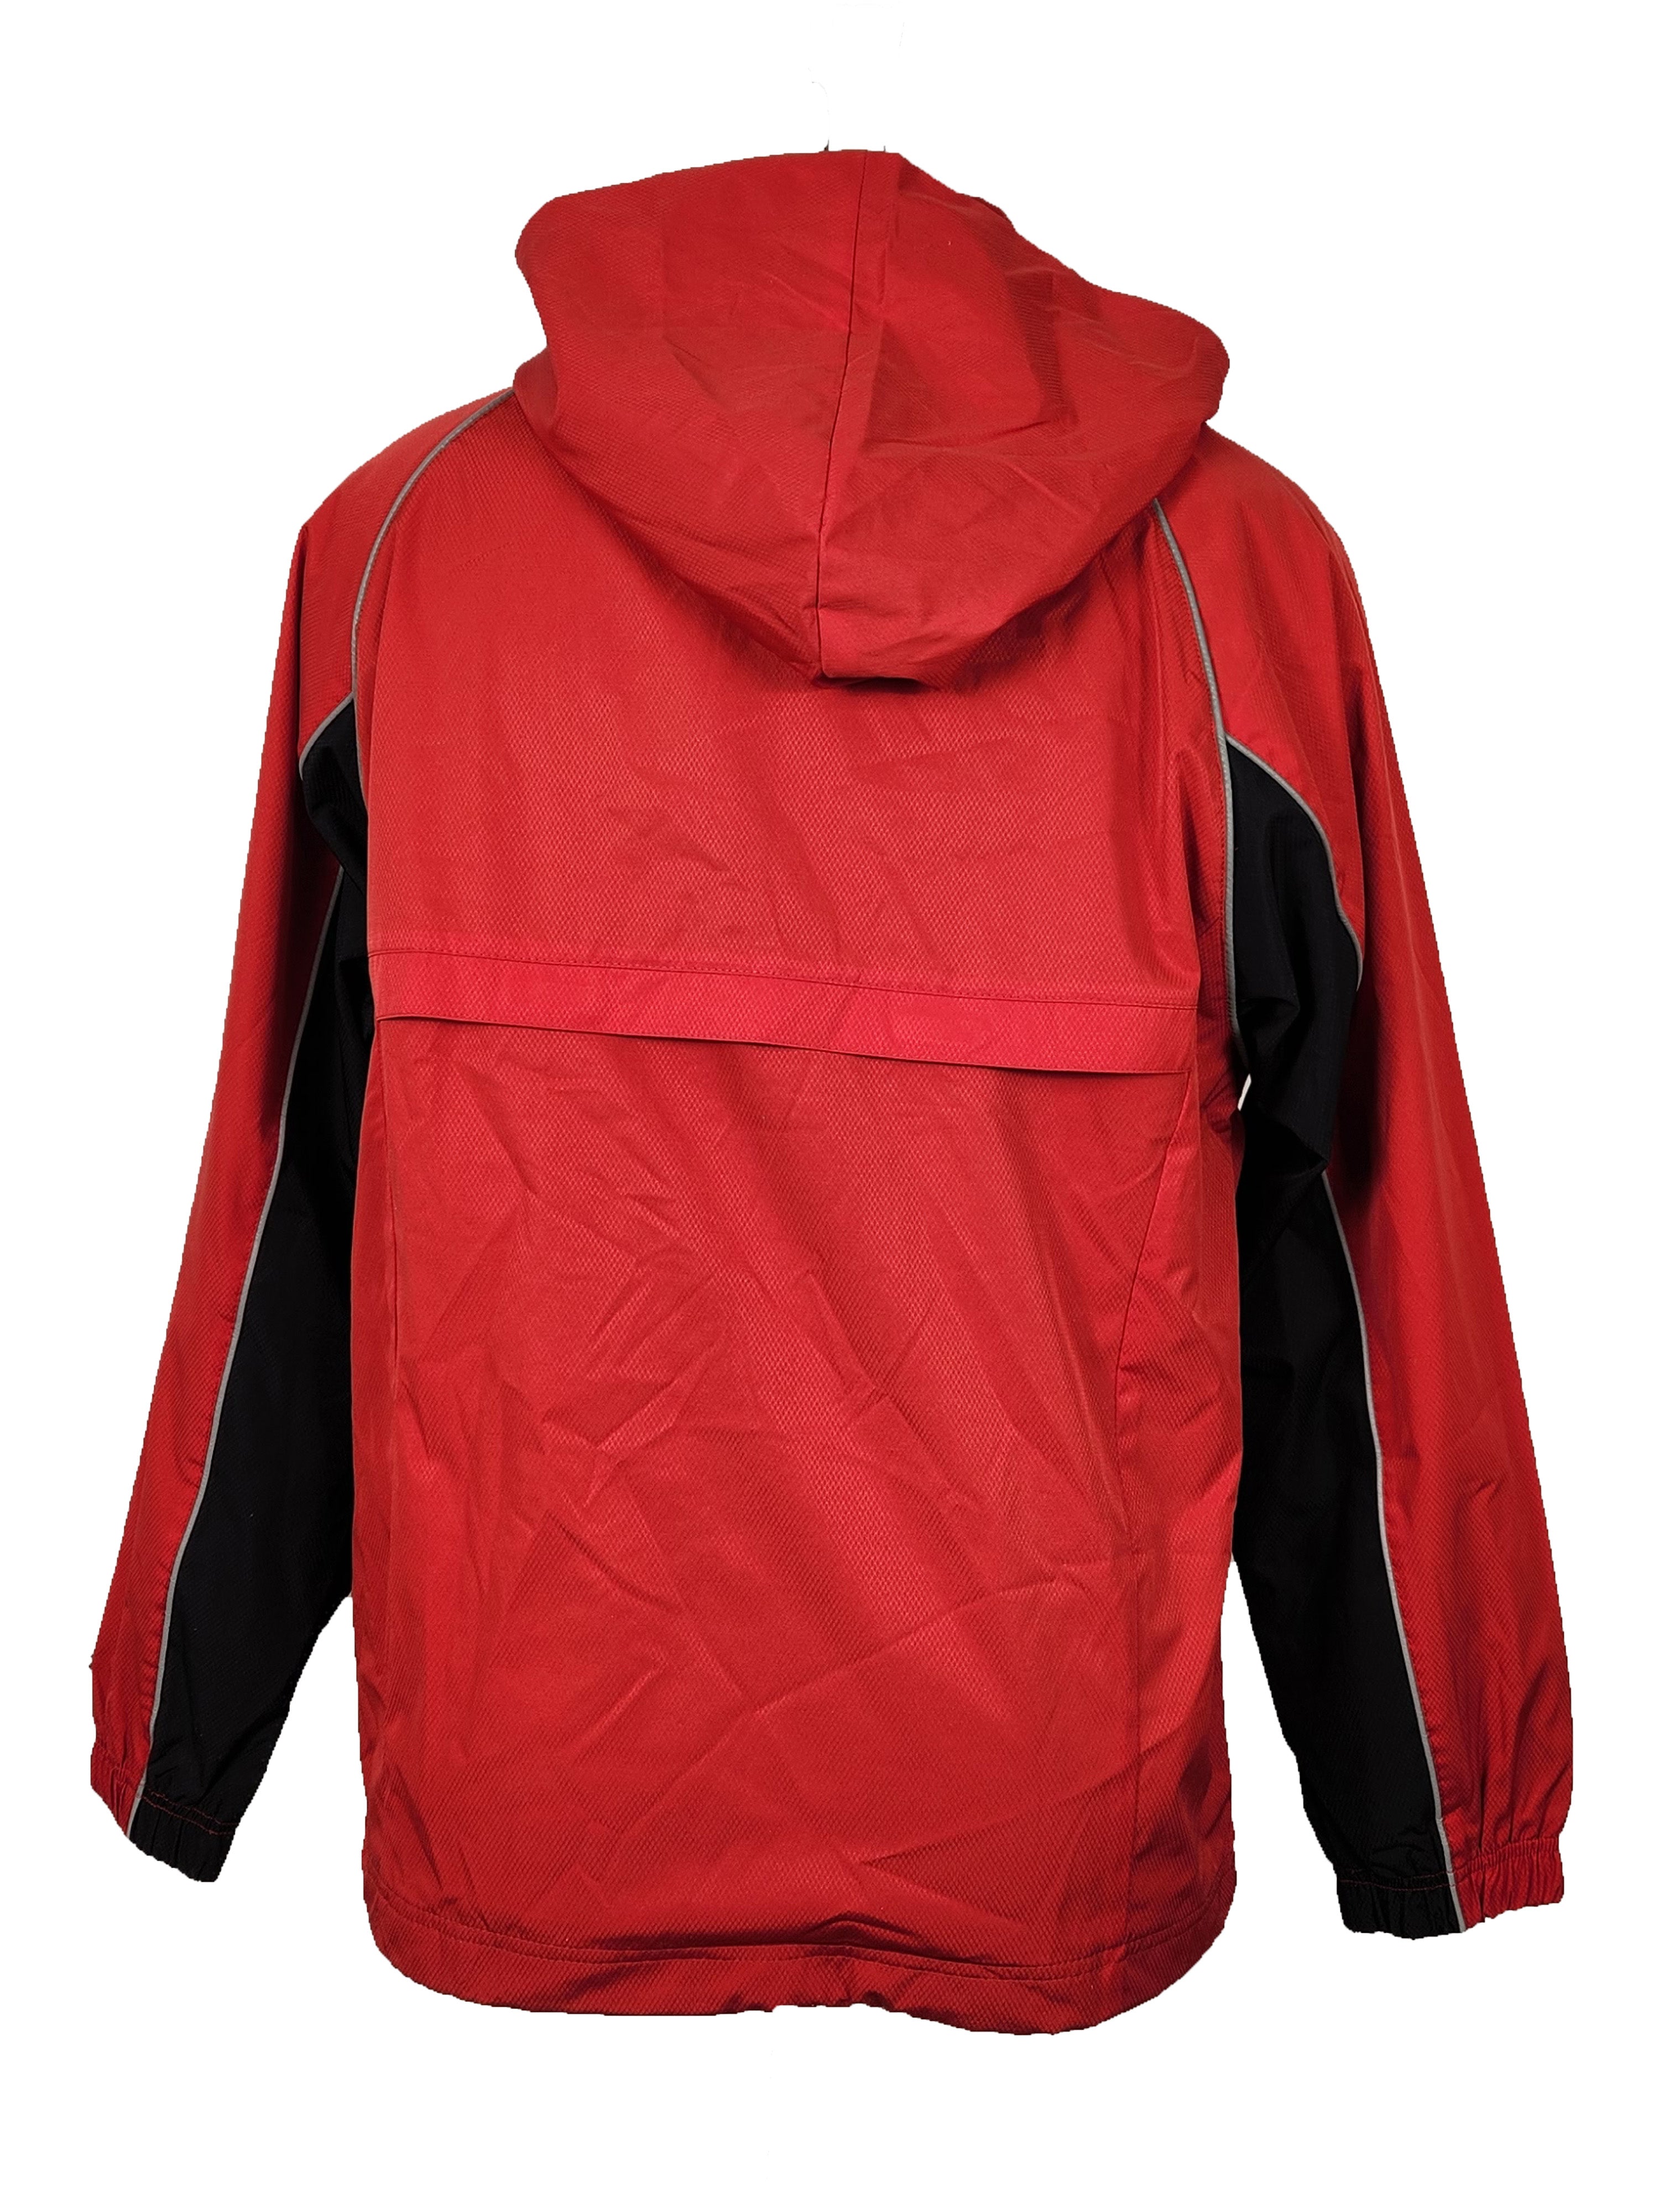 Champion Red Half-Zip Pullover Windbreaker Men's Size S